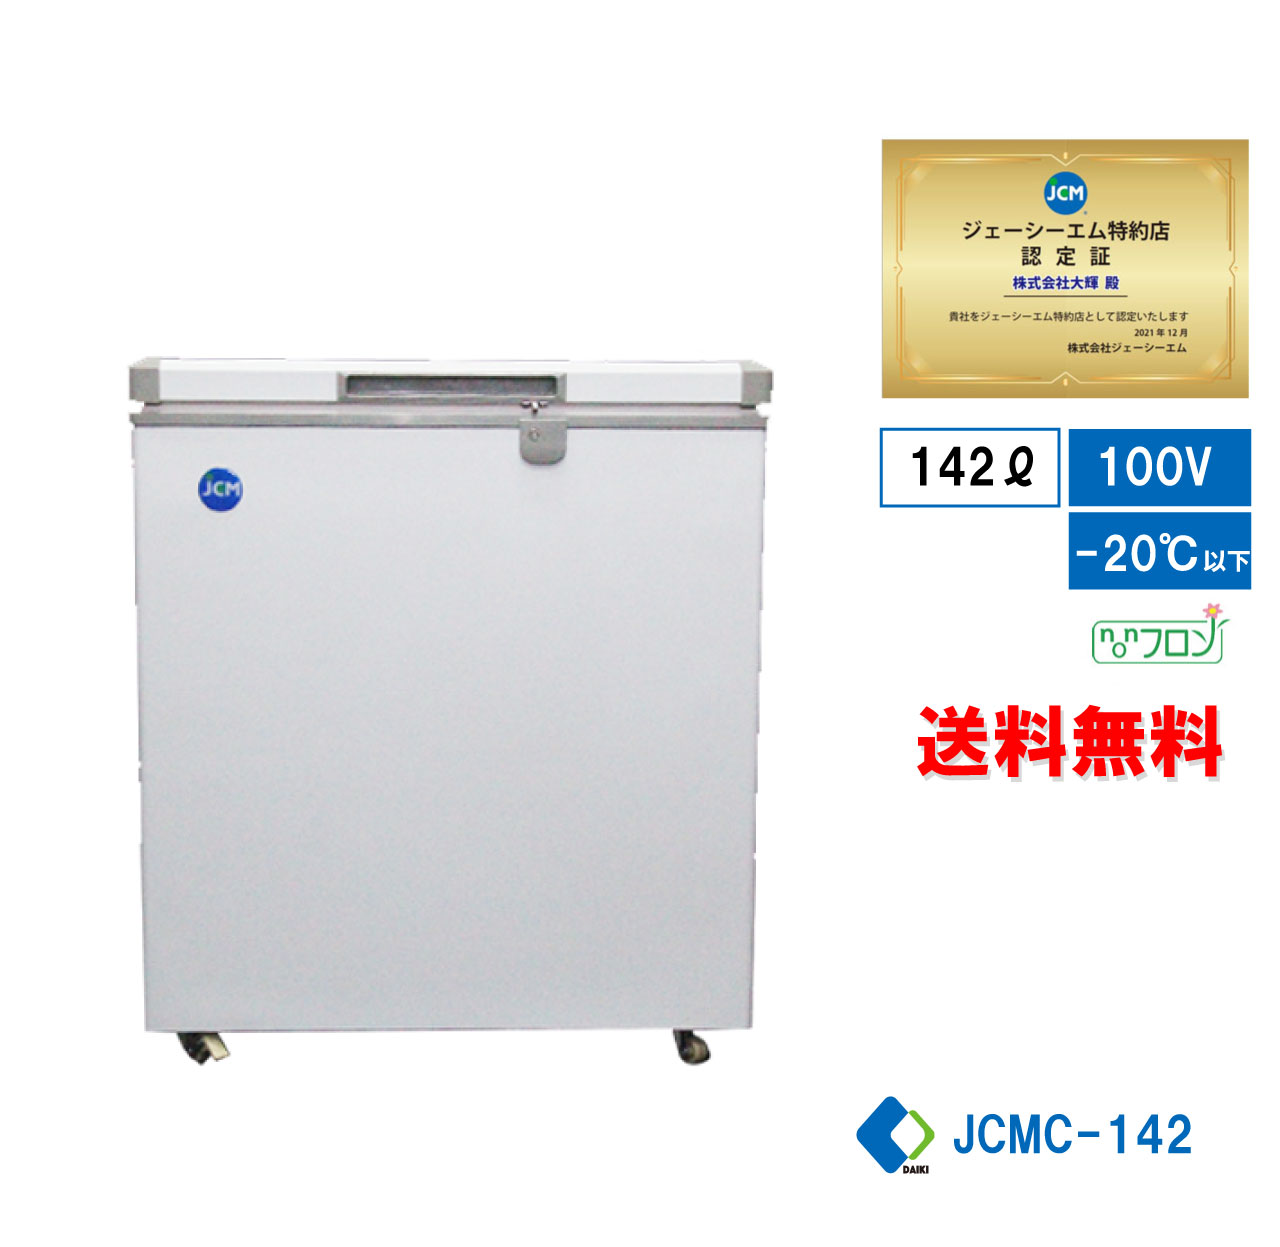 冷凍ストッカー 冷凍庫 保冷庫 業務用冷凍庫 フリーザー JCMC-142 142L 